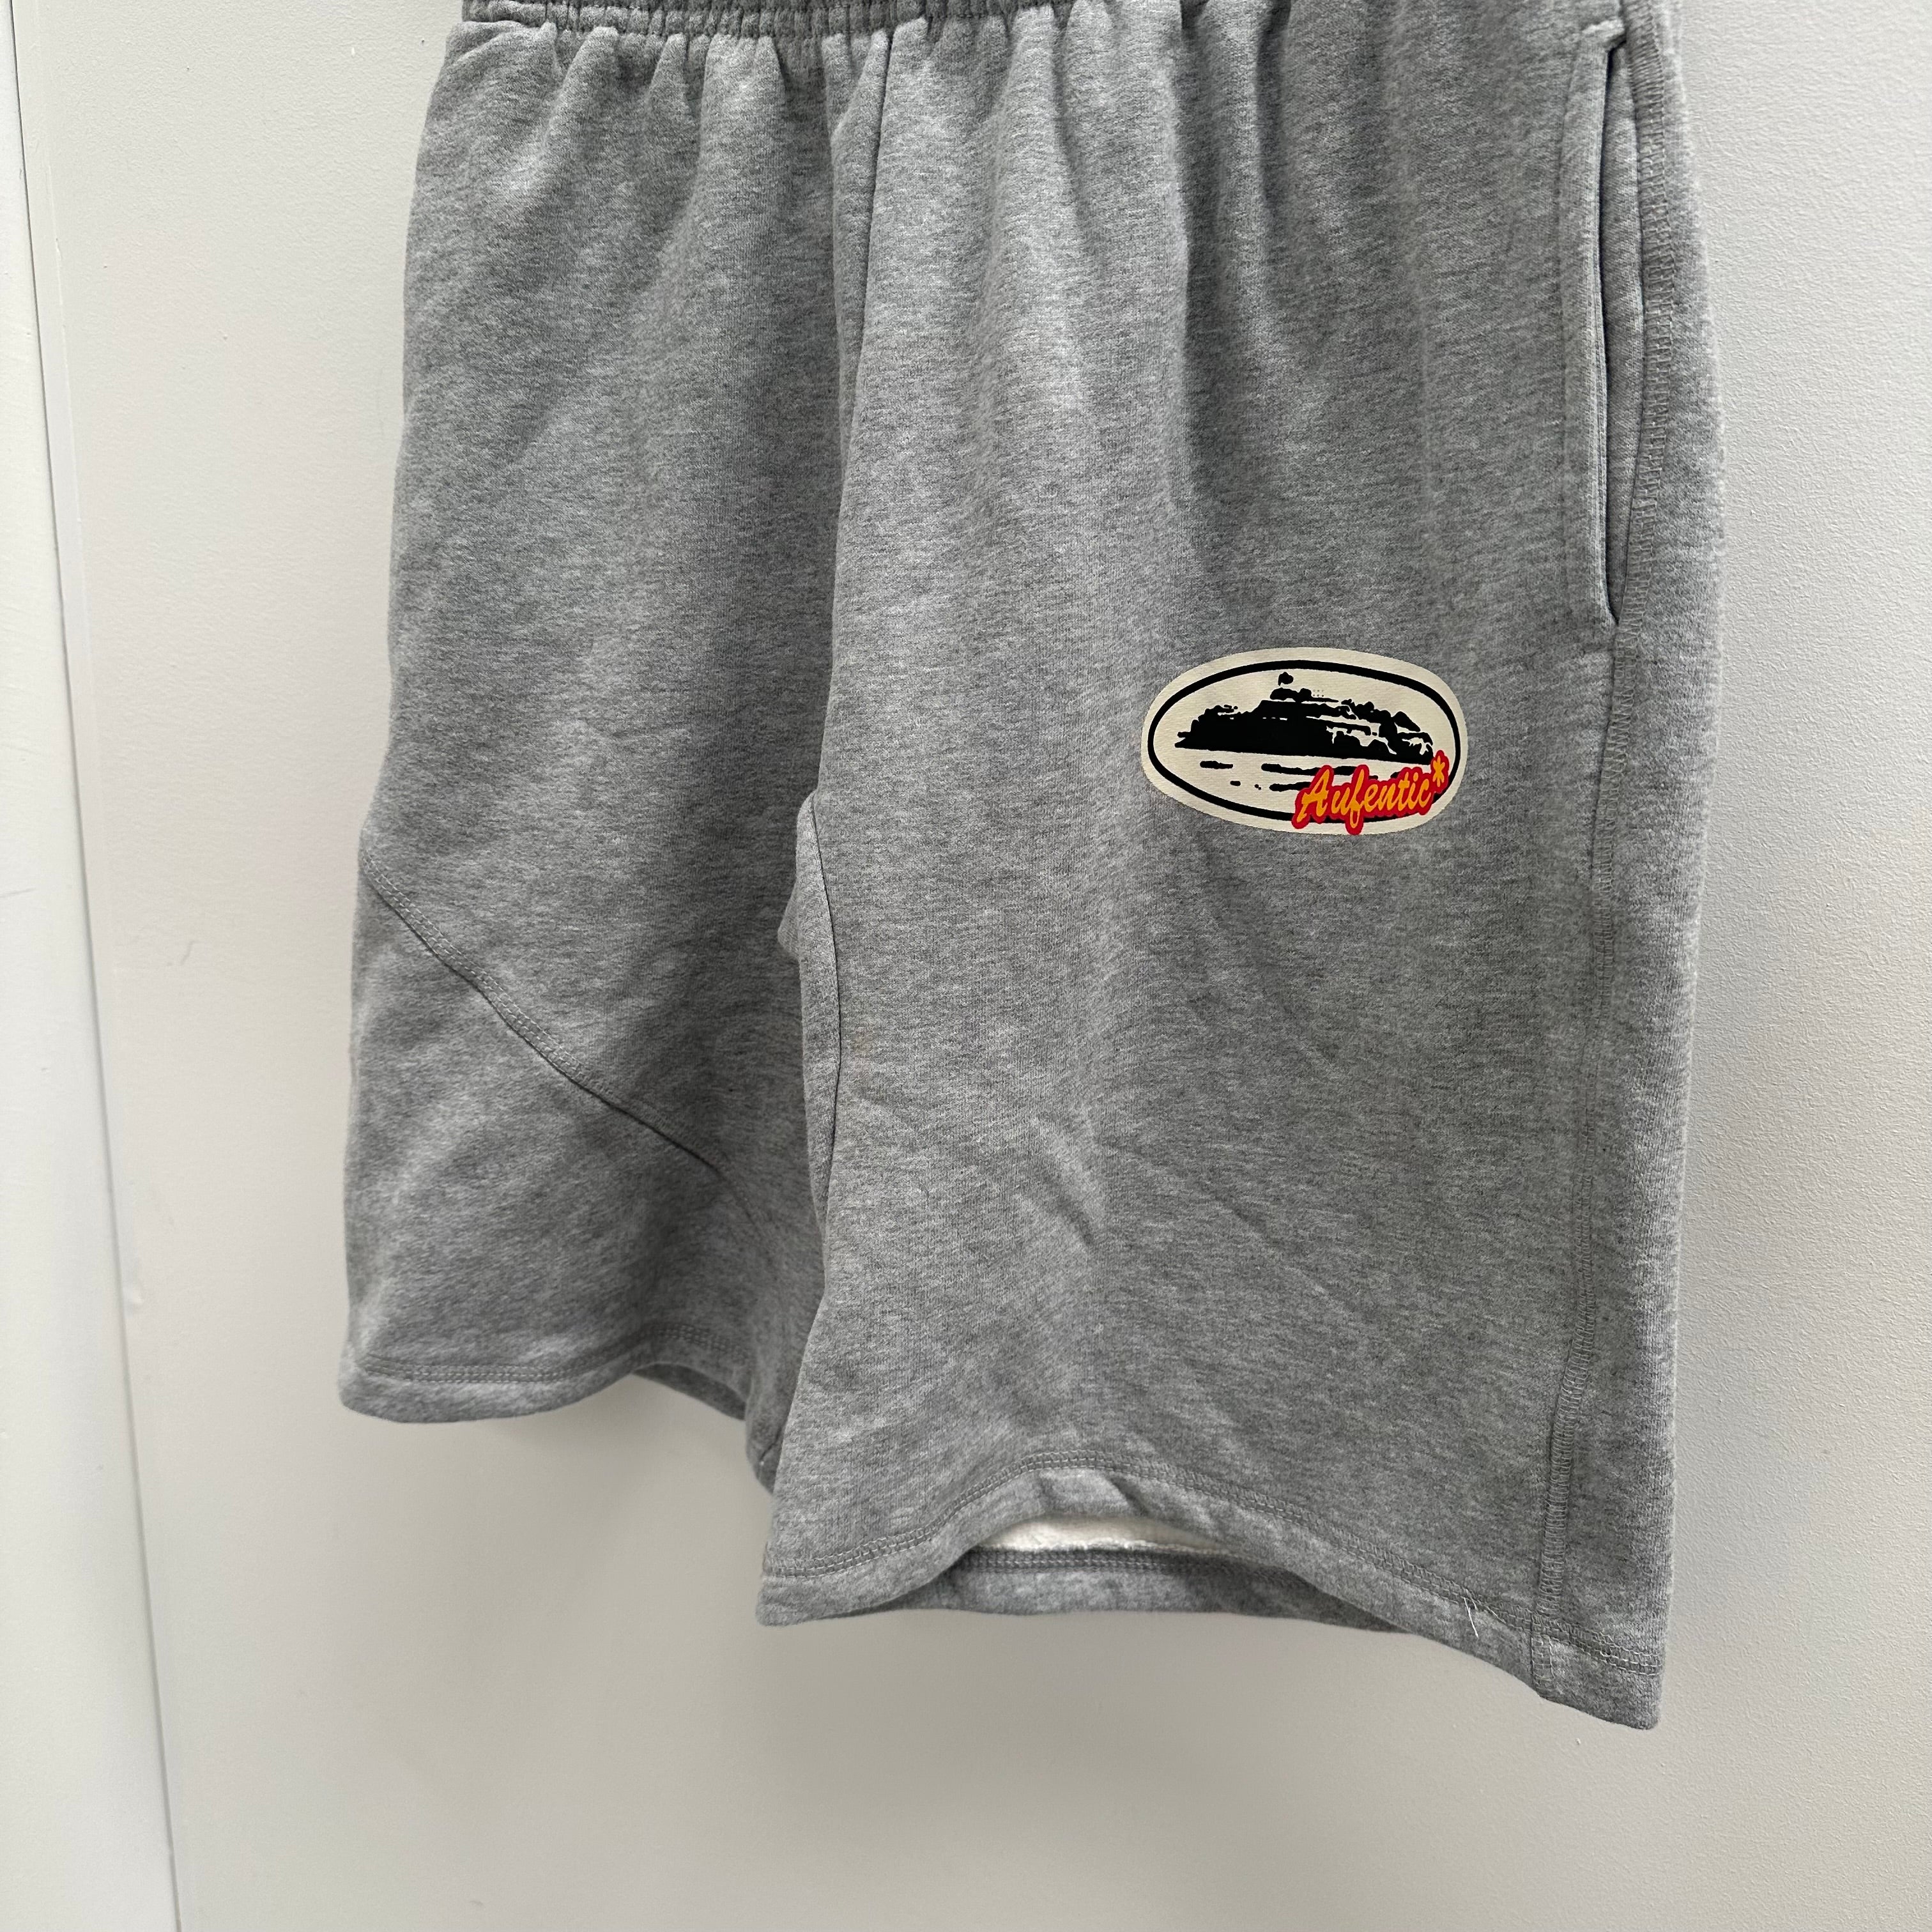 Corteiz Aufentic Shorts Grey (Size XL)